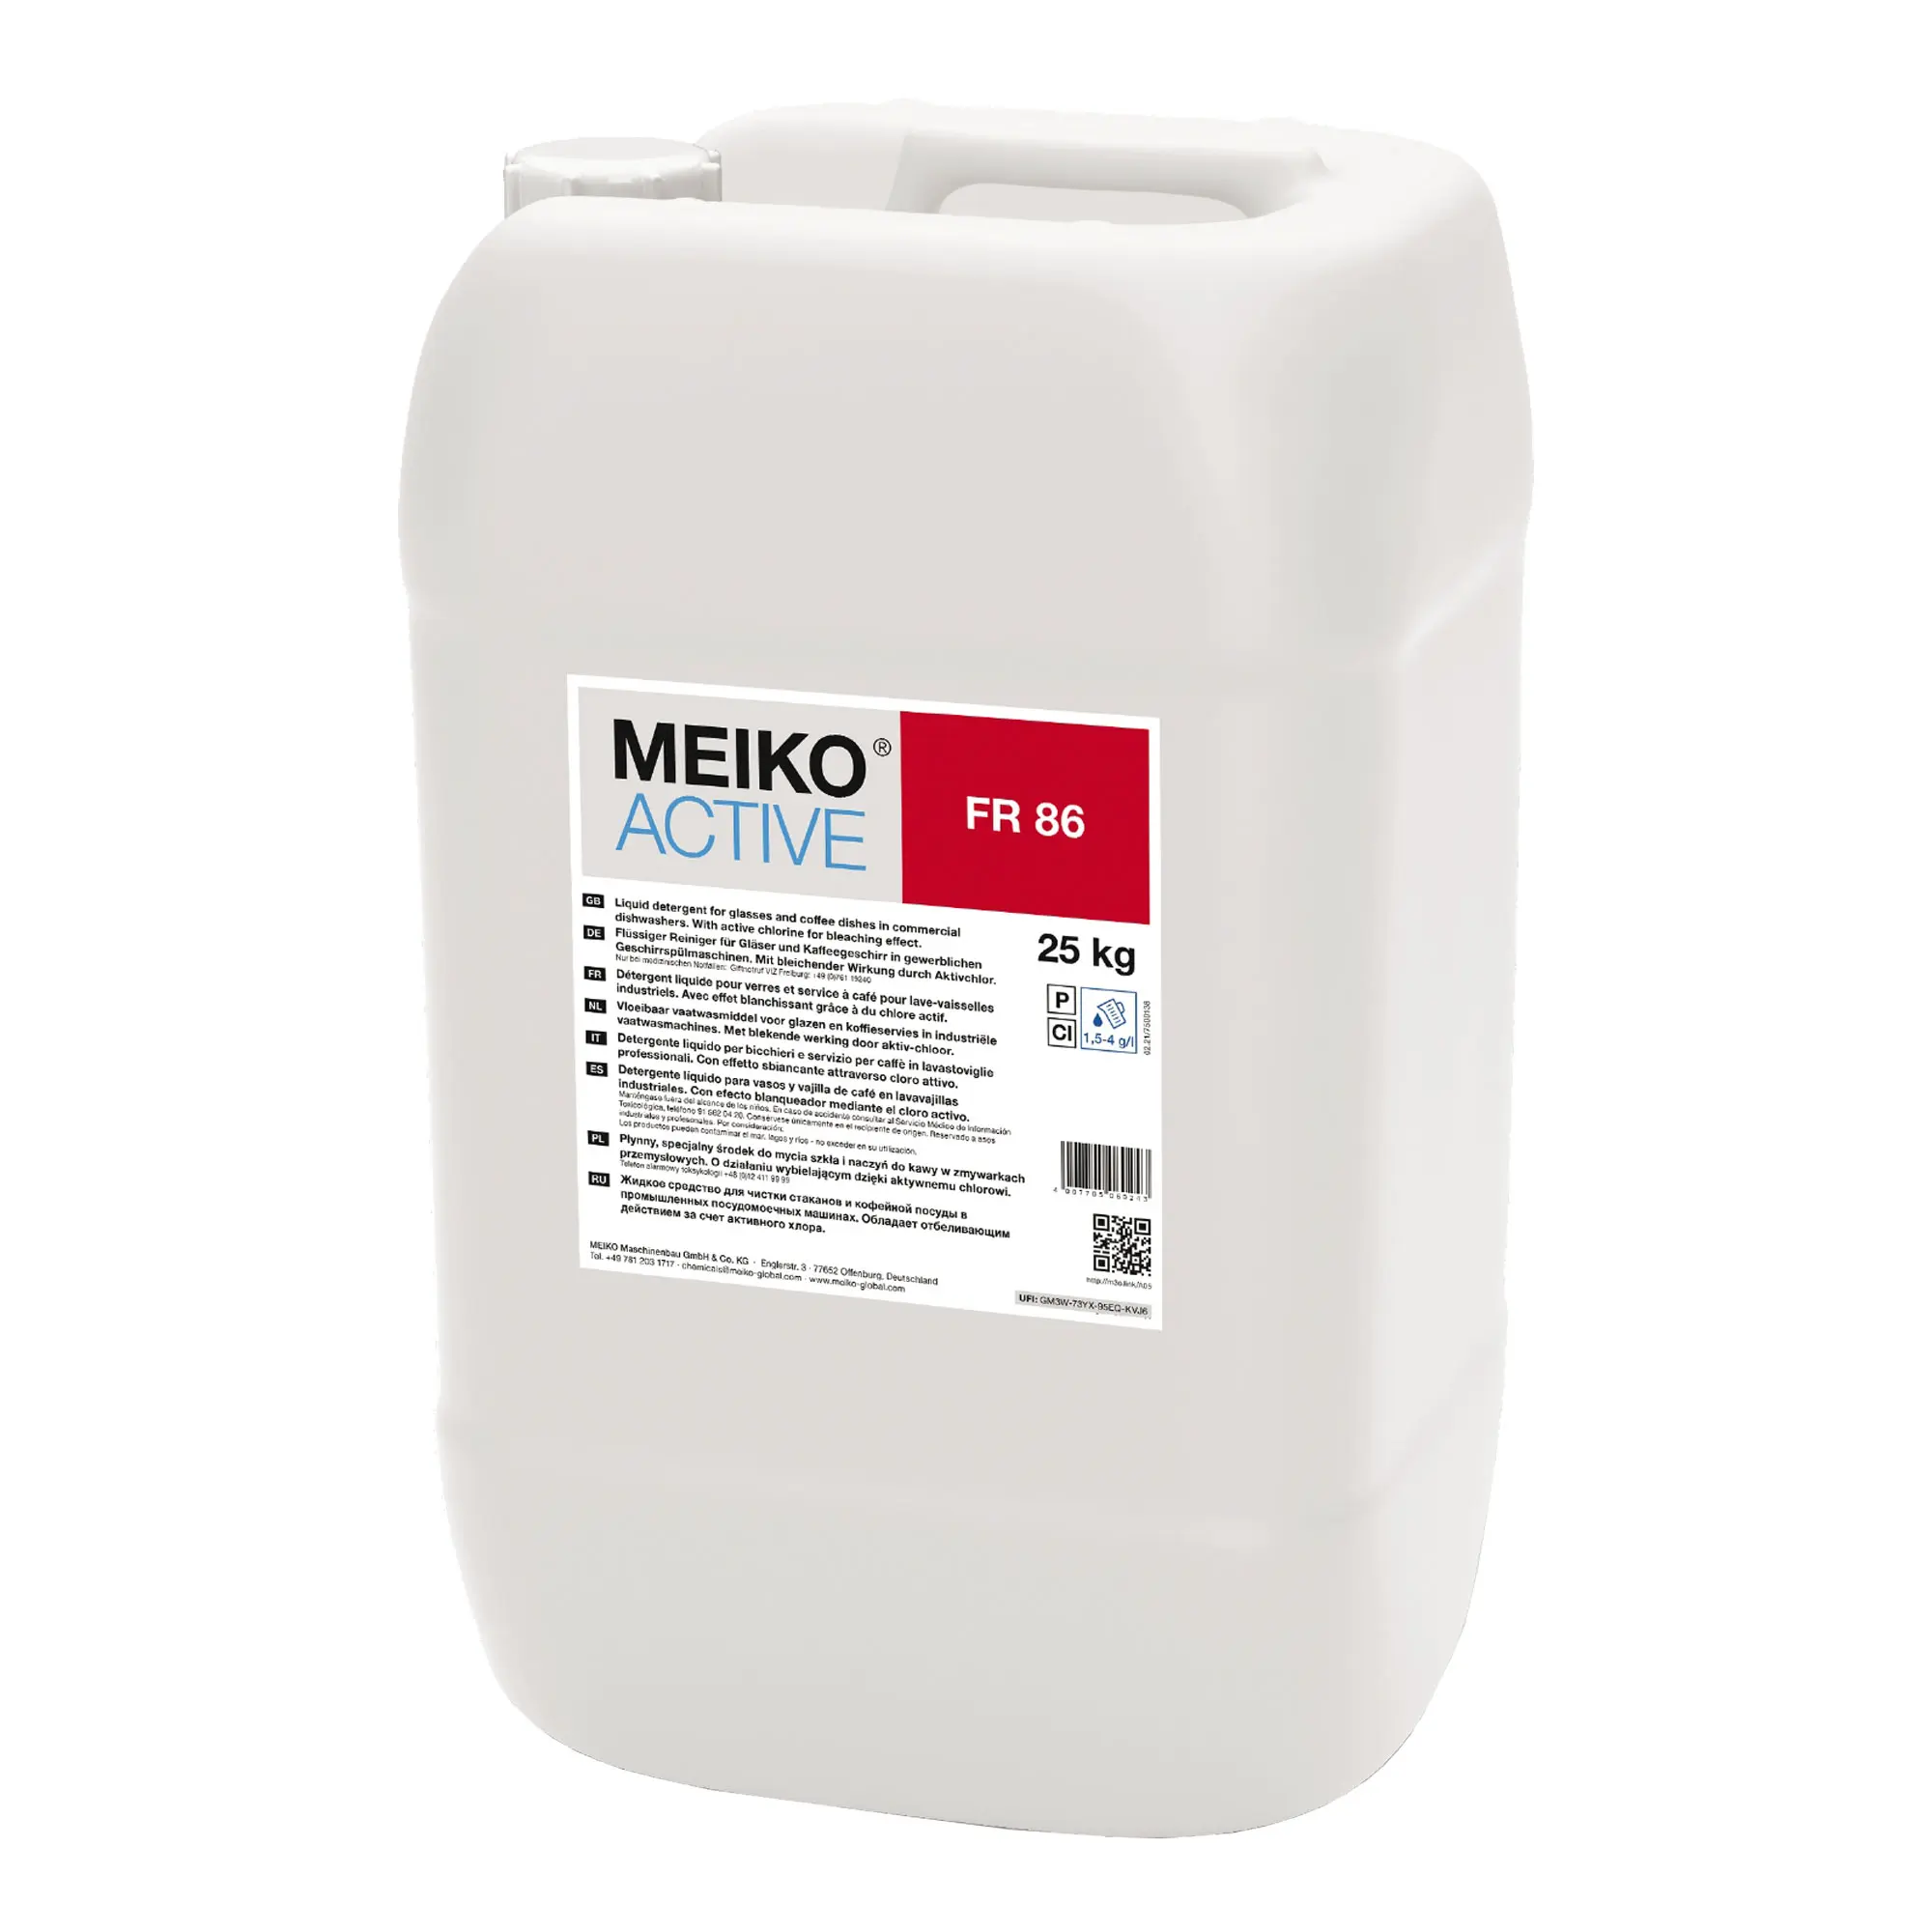 Meiko Active FR 86 flüssiger Reiniger für Verfärbungen